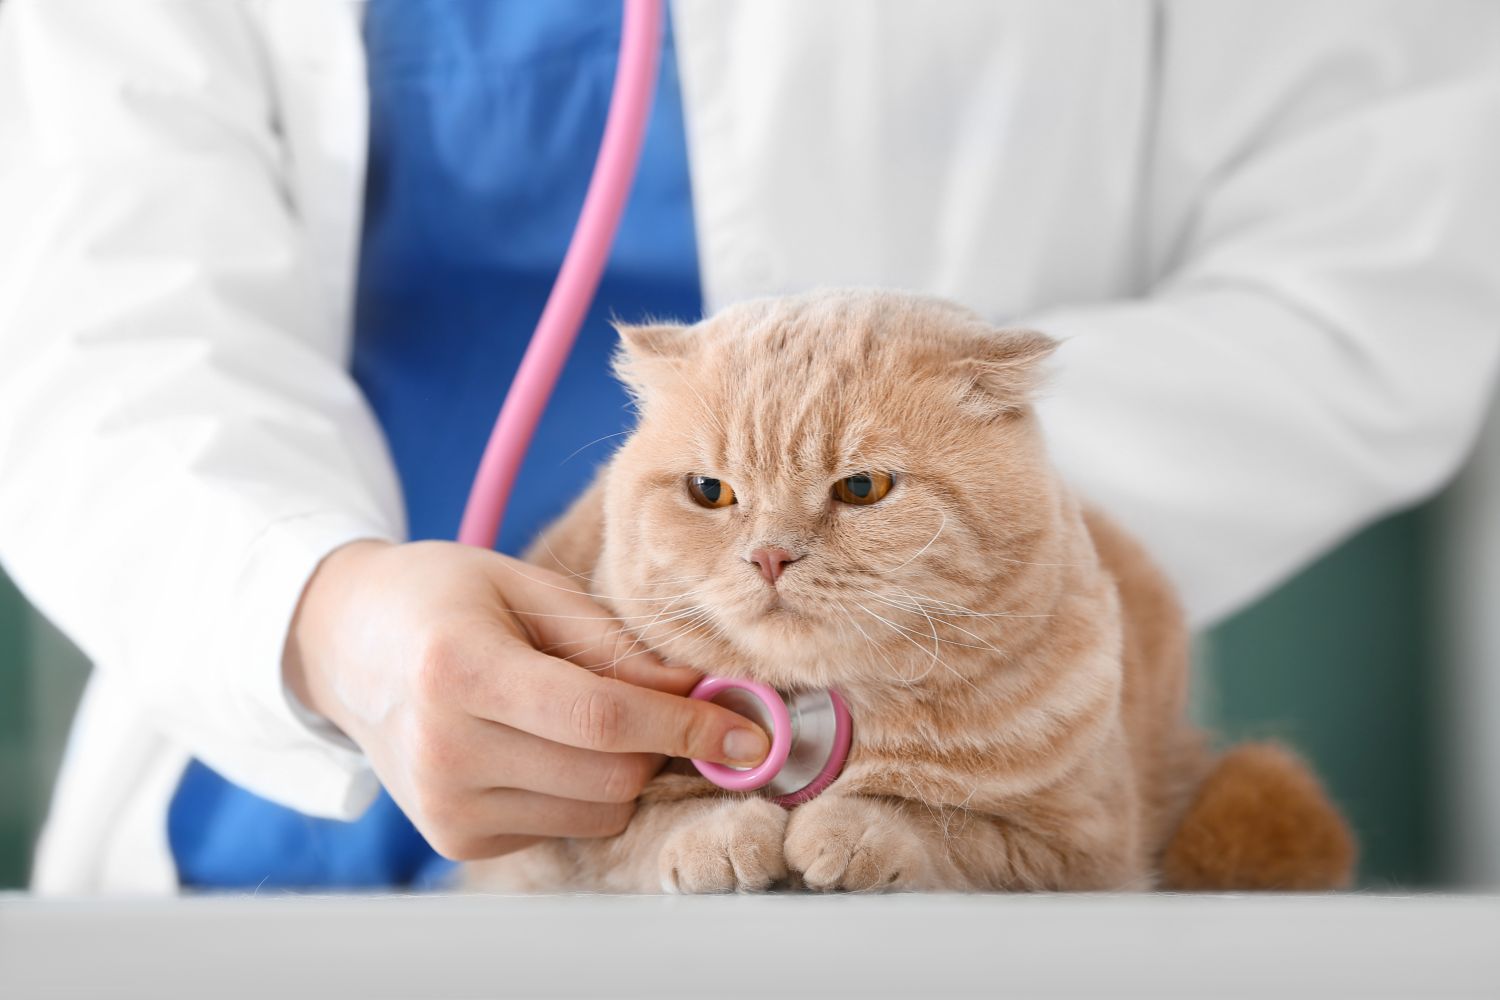 DVM in Veterinary Medicine